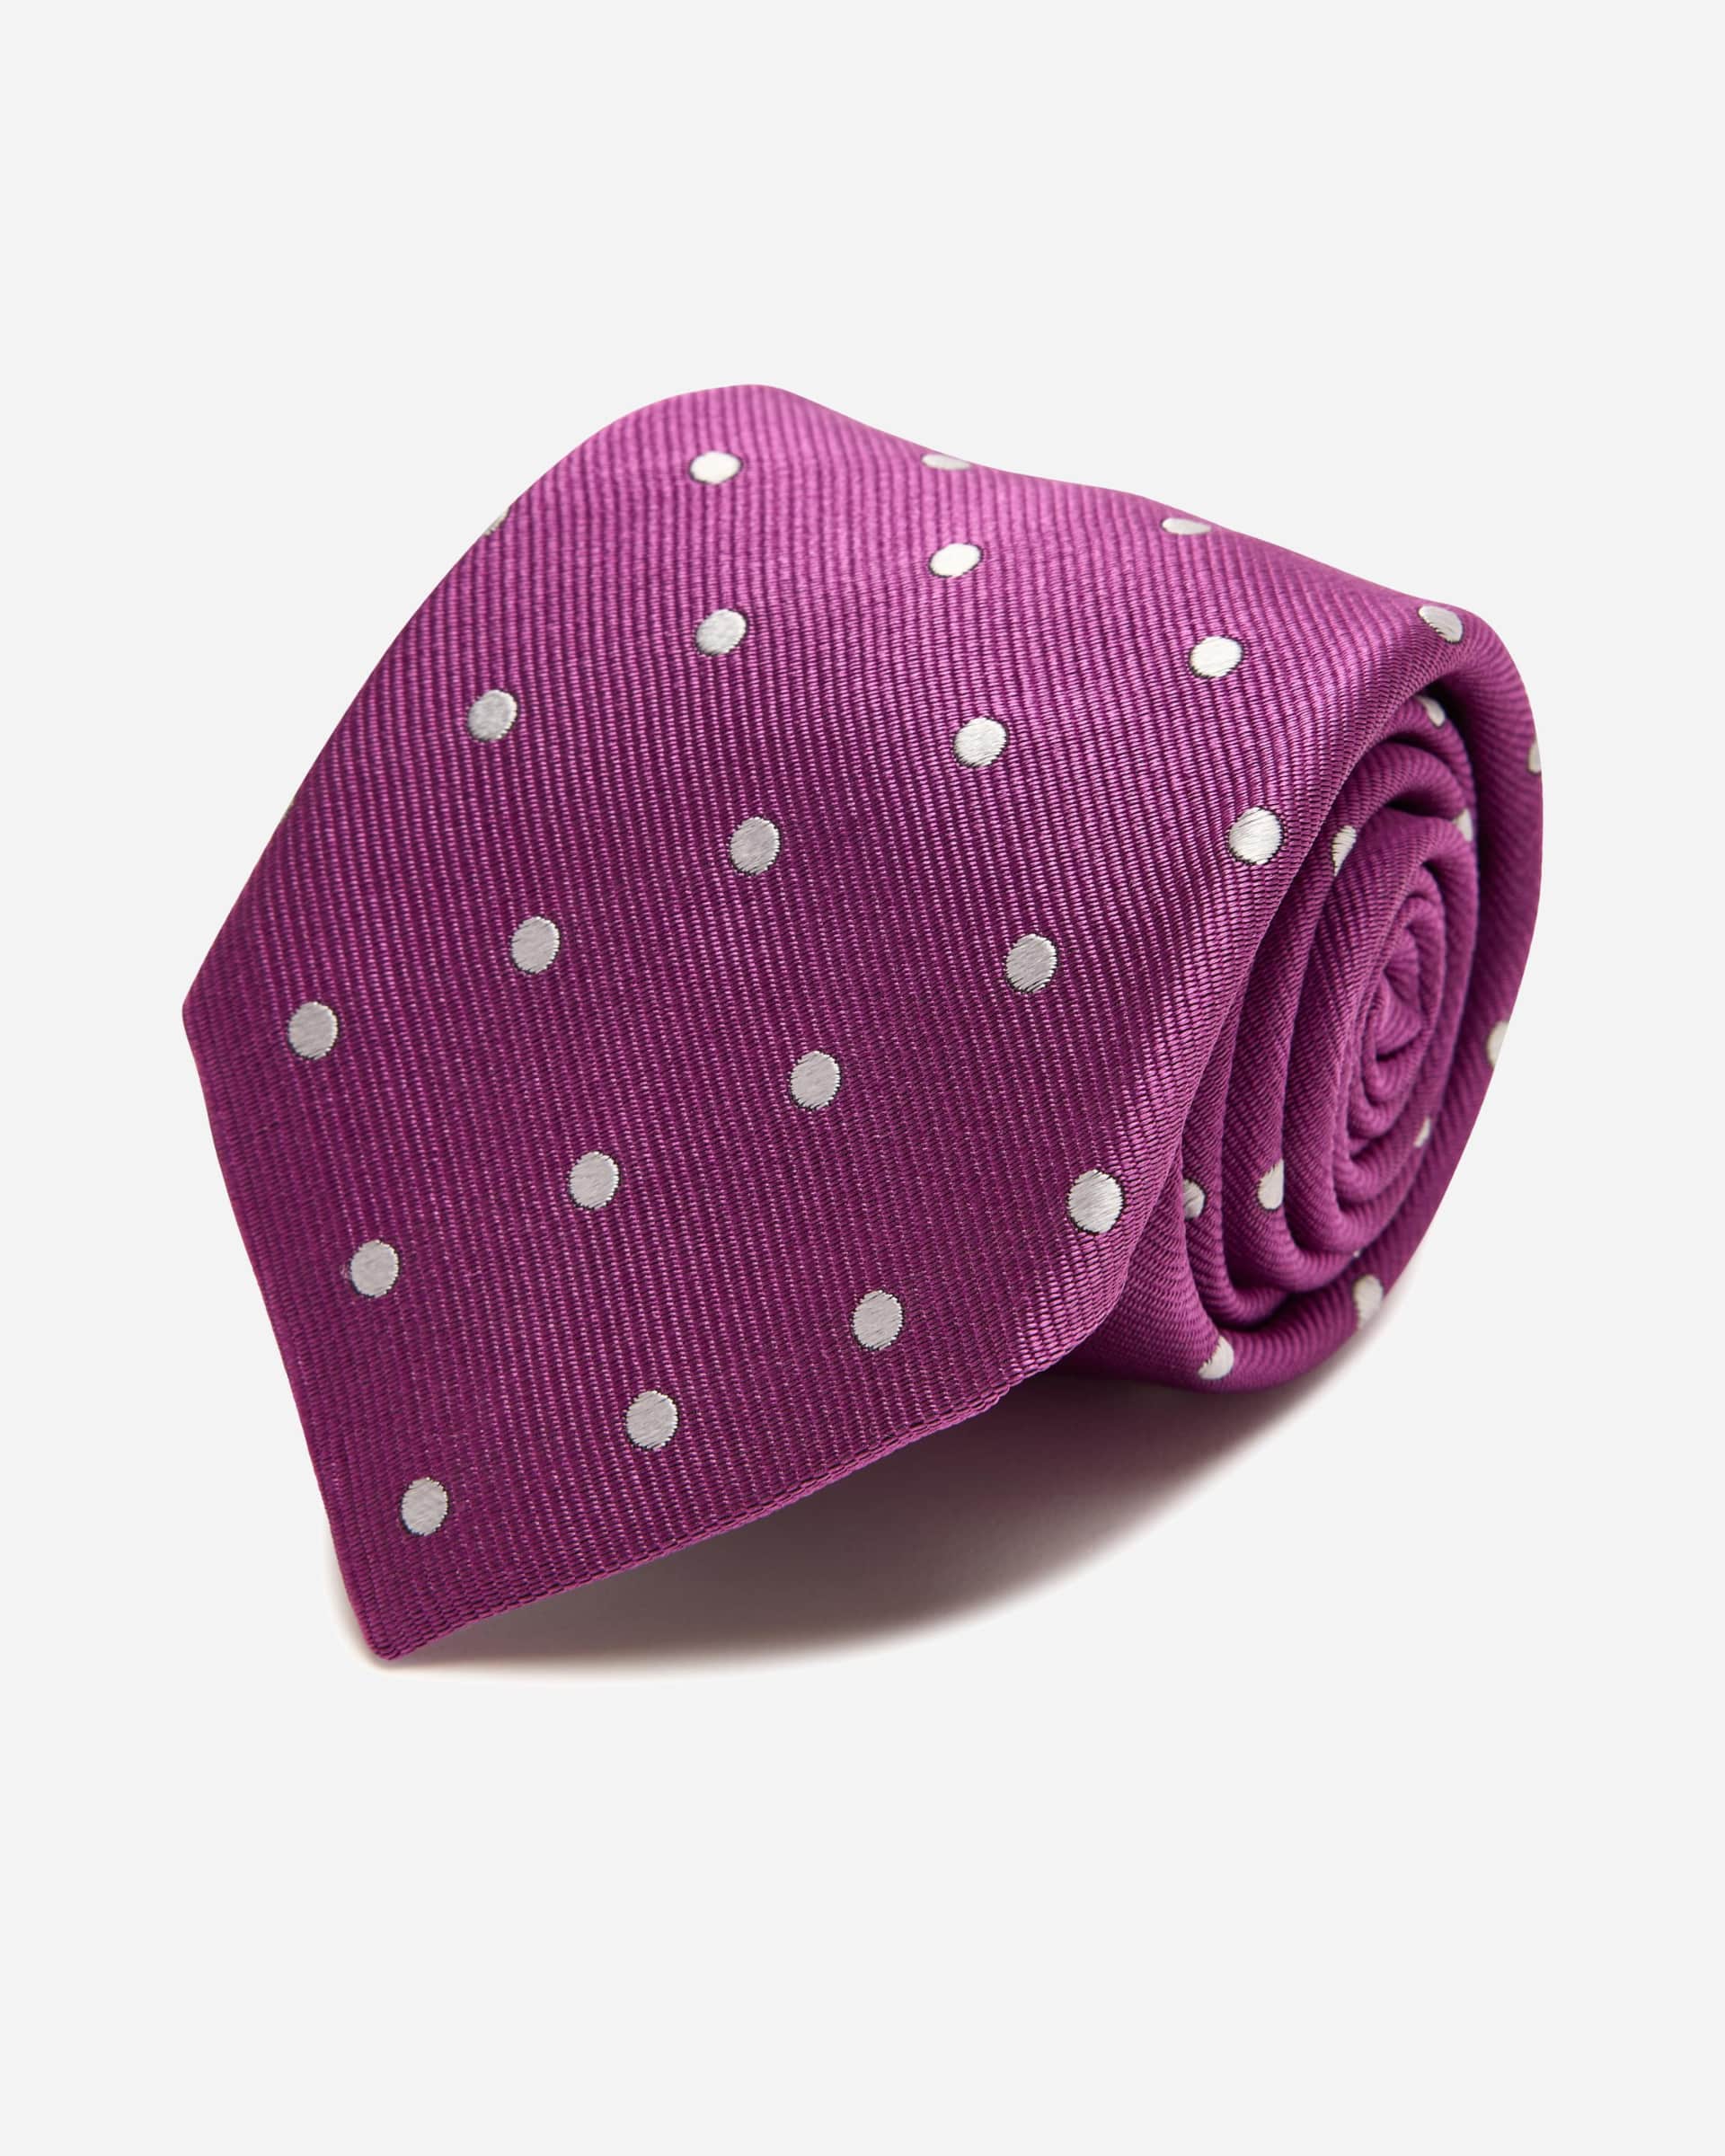 Vista Purple Silk Tie - Men's Ties at Menzclub